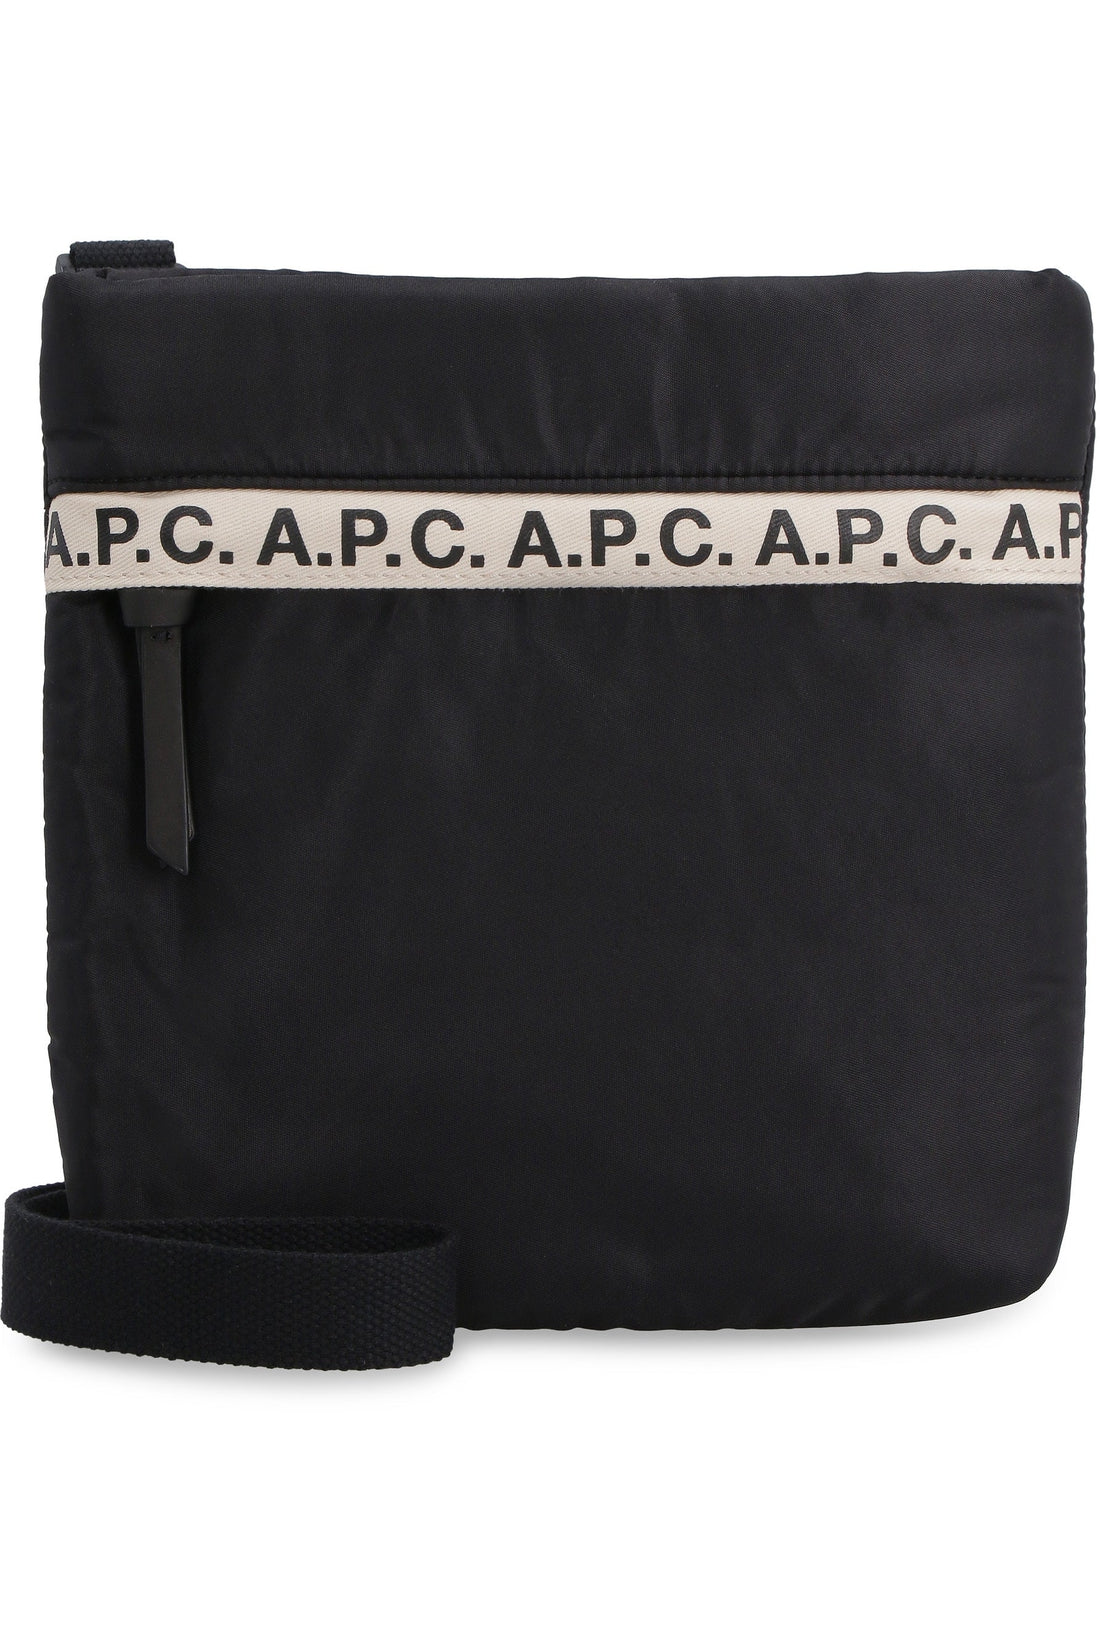 A.P.C.-OUTLET-SALE-Repeat nylon messenger-bag-ARCHIVIST